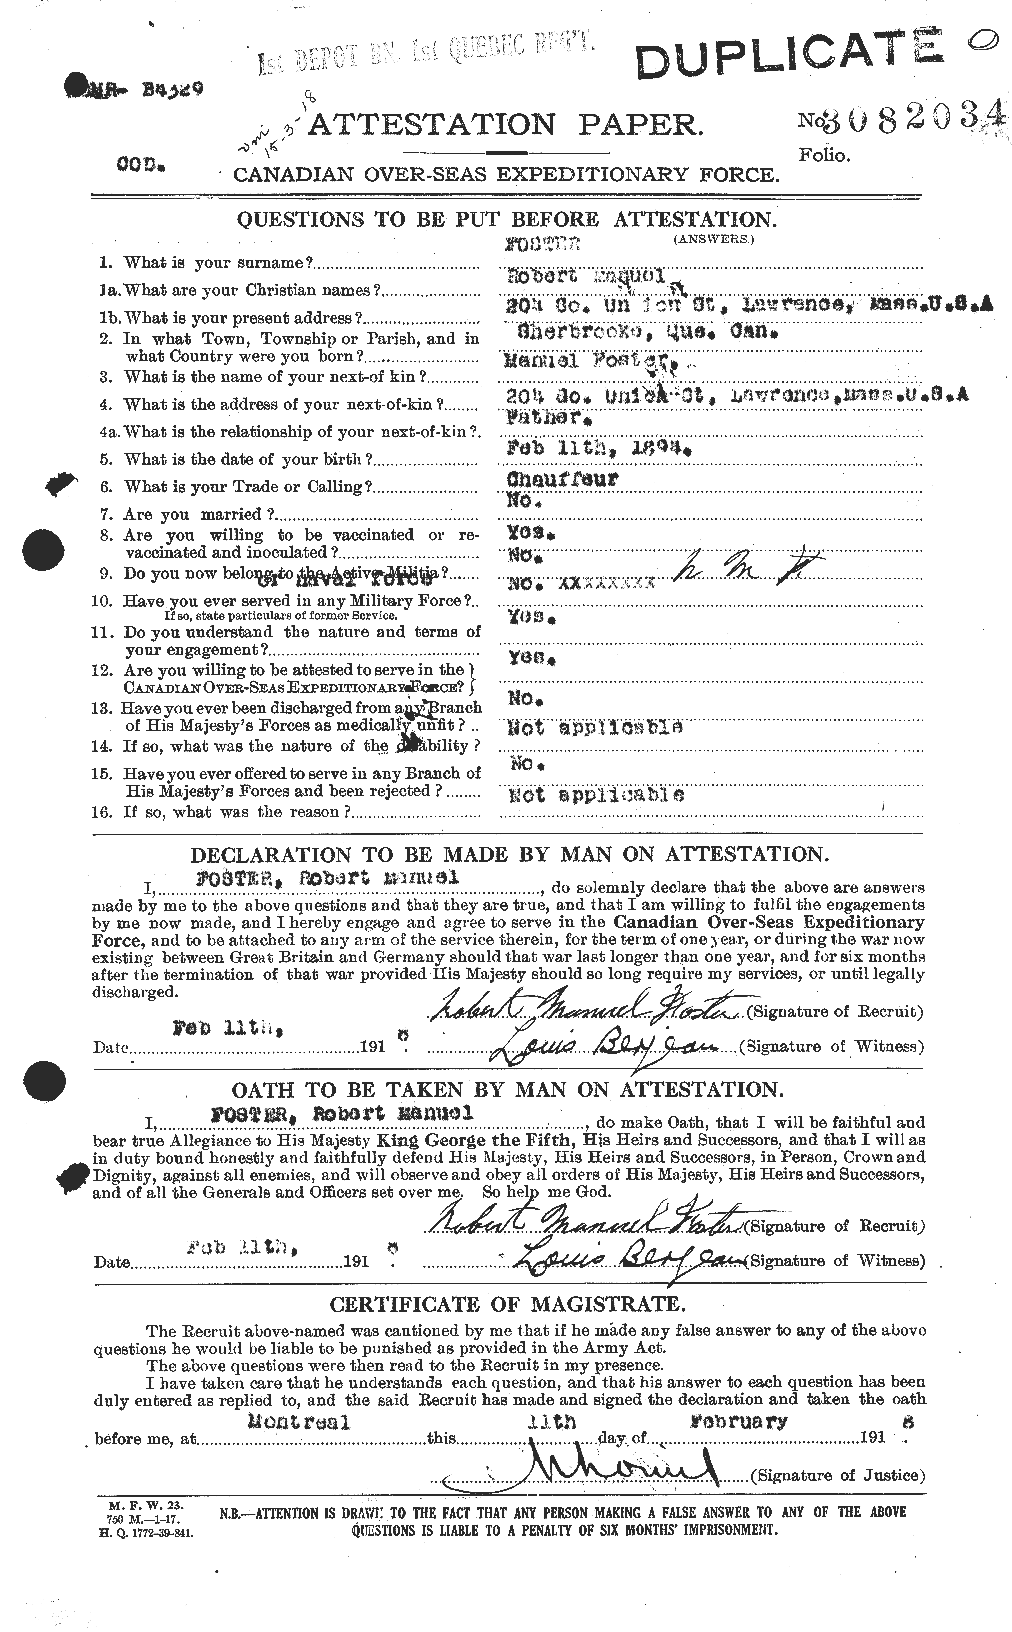 Dossiers du Personnel de la Première Guerre mondiale - CEC 335181a